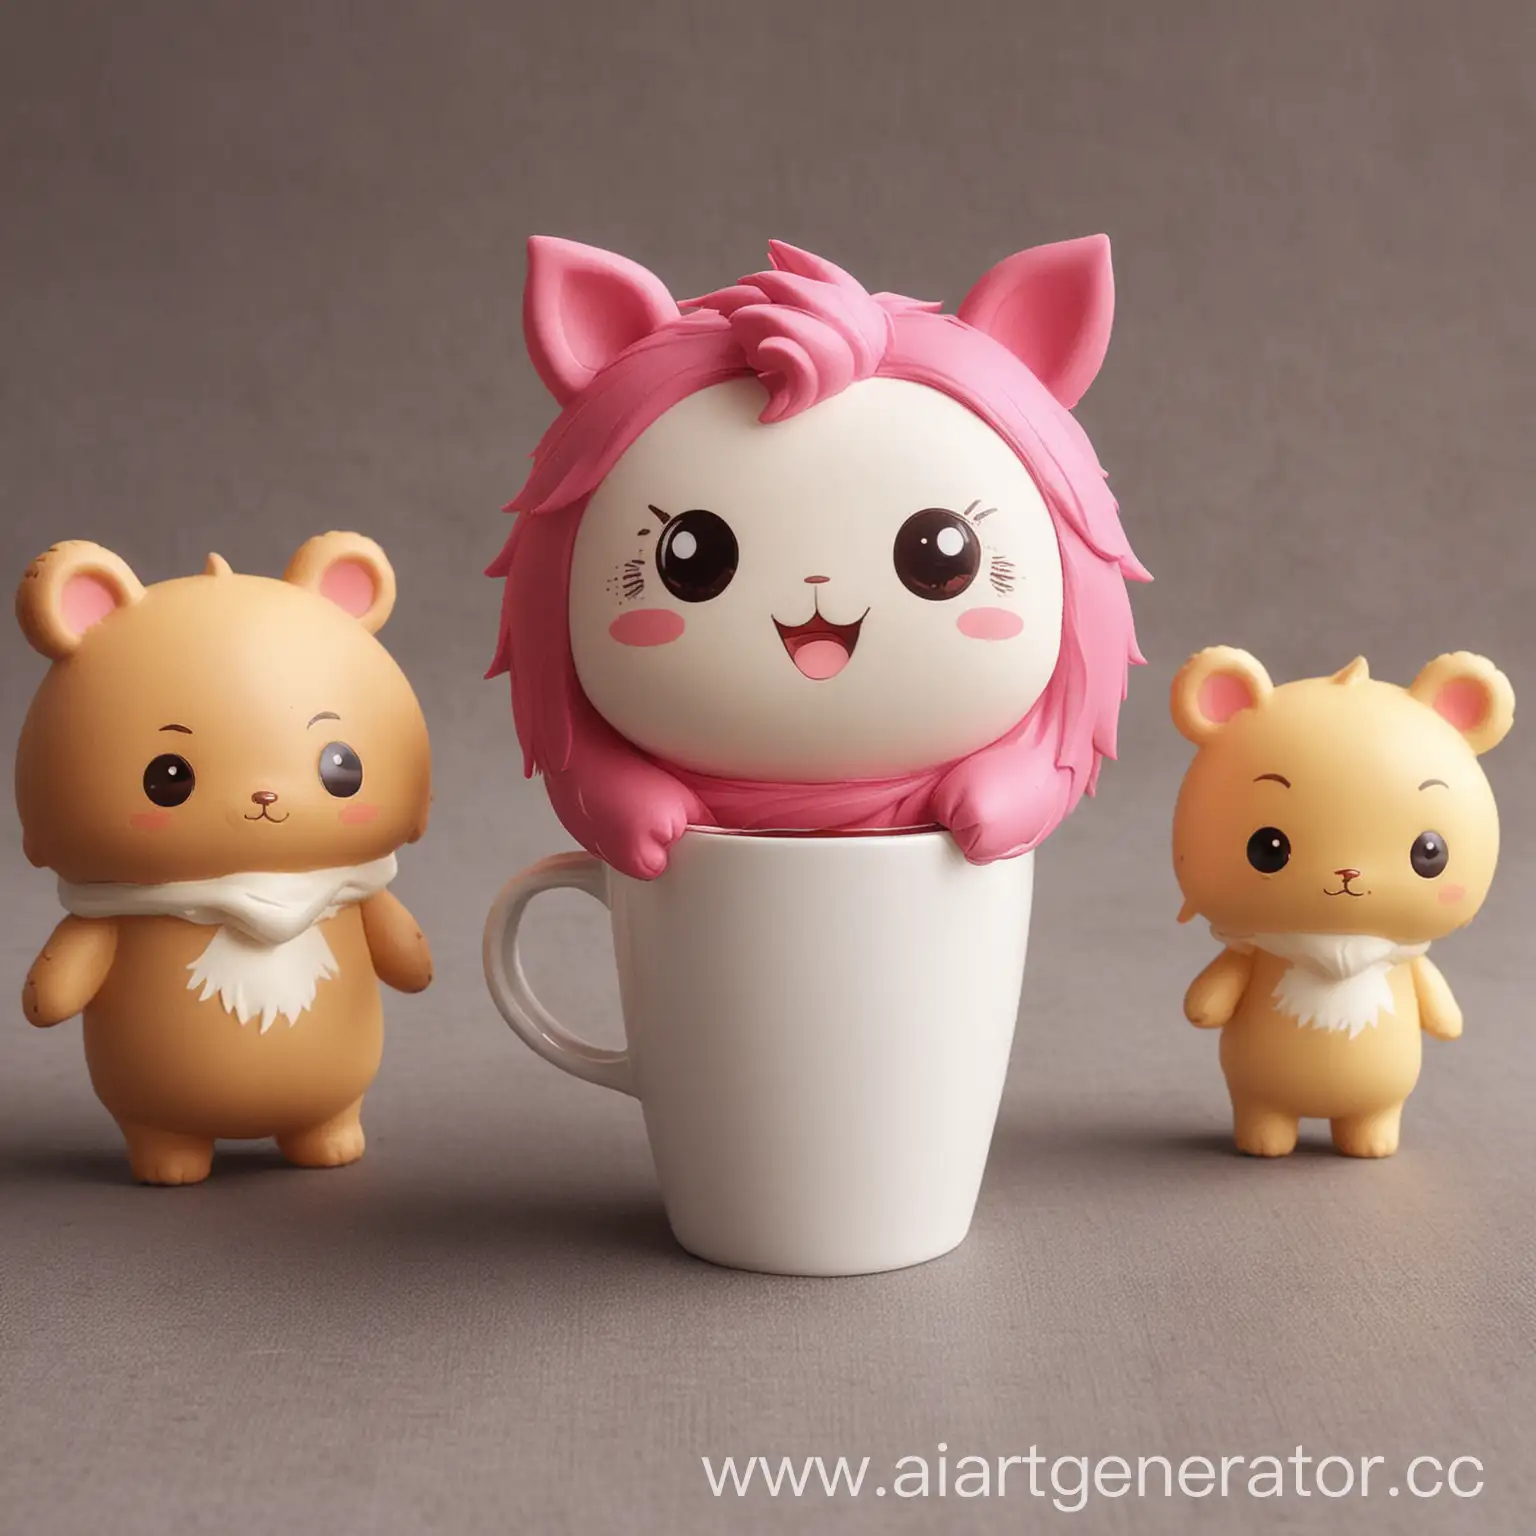 Anime-Toy-Character-Animal-Merchandise-Coffee-Break